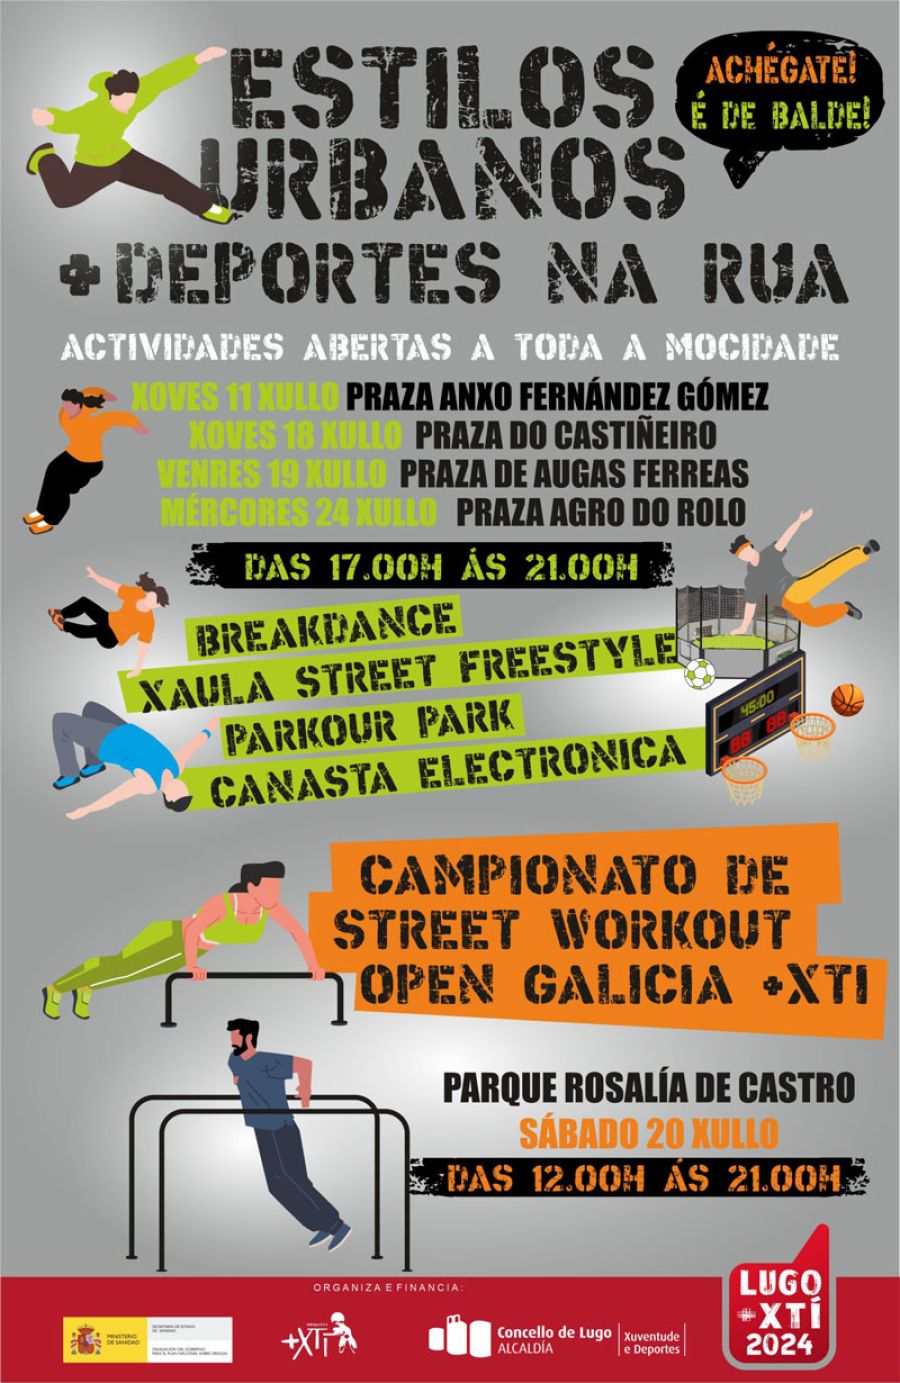 Campionato de Street Workout 2024 | Parque de Rosalía